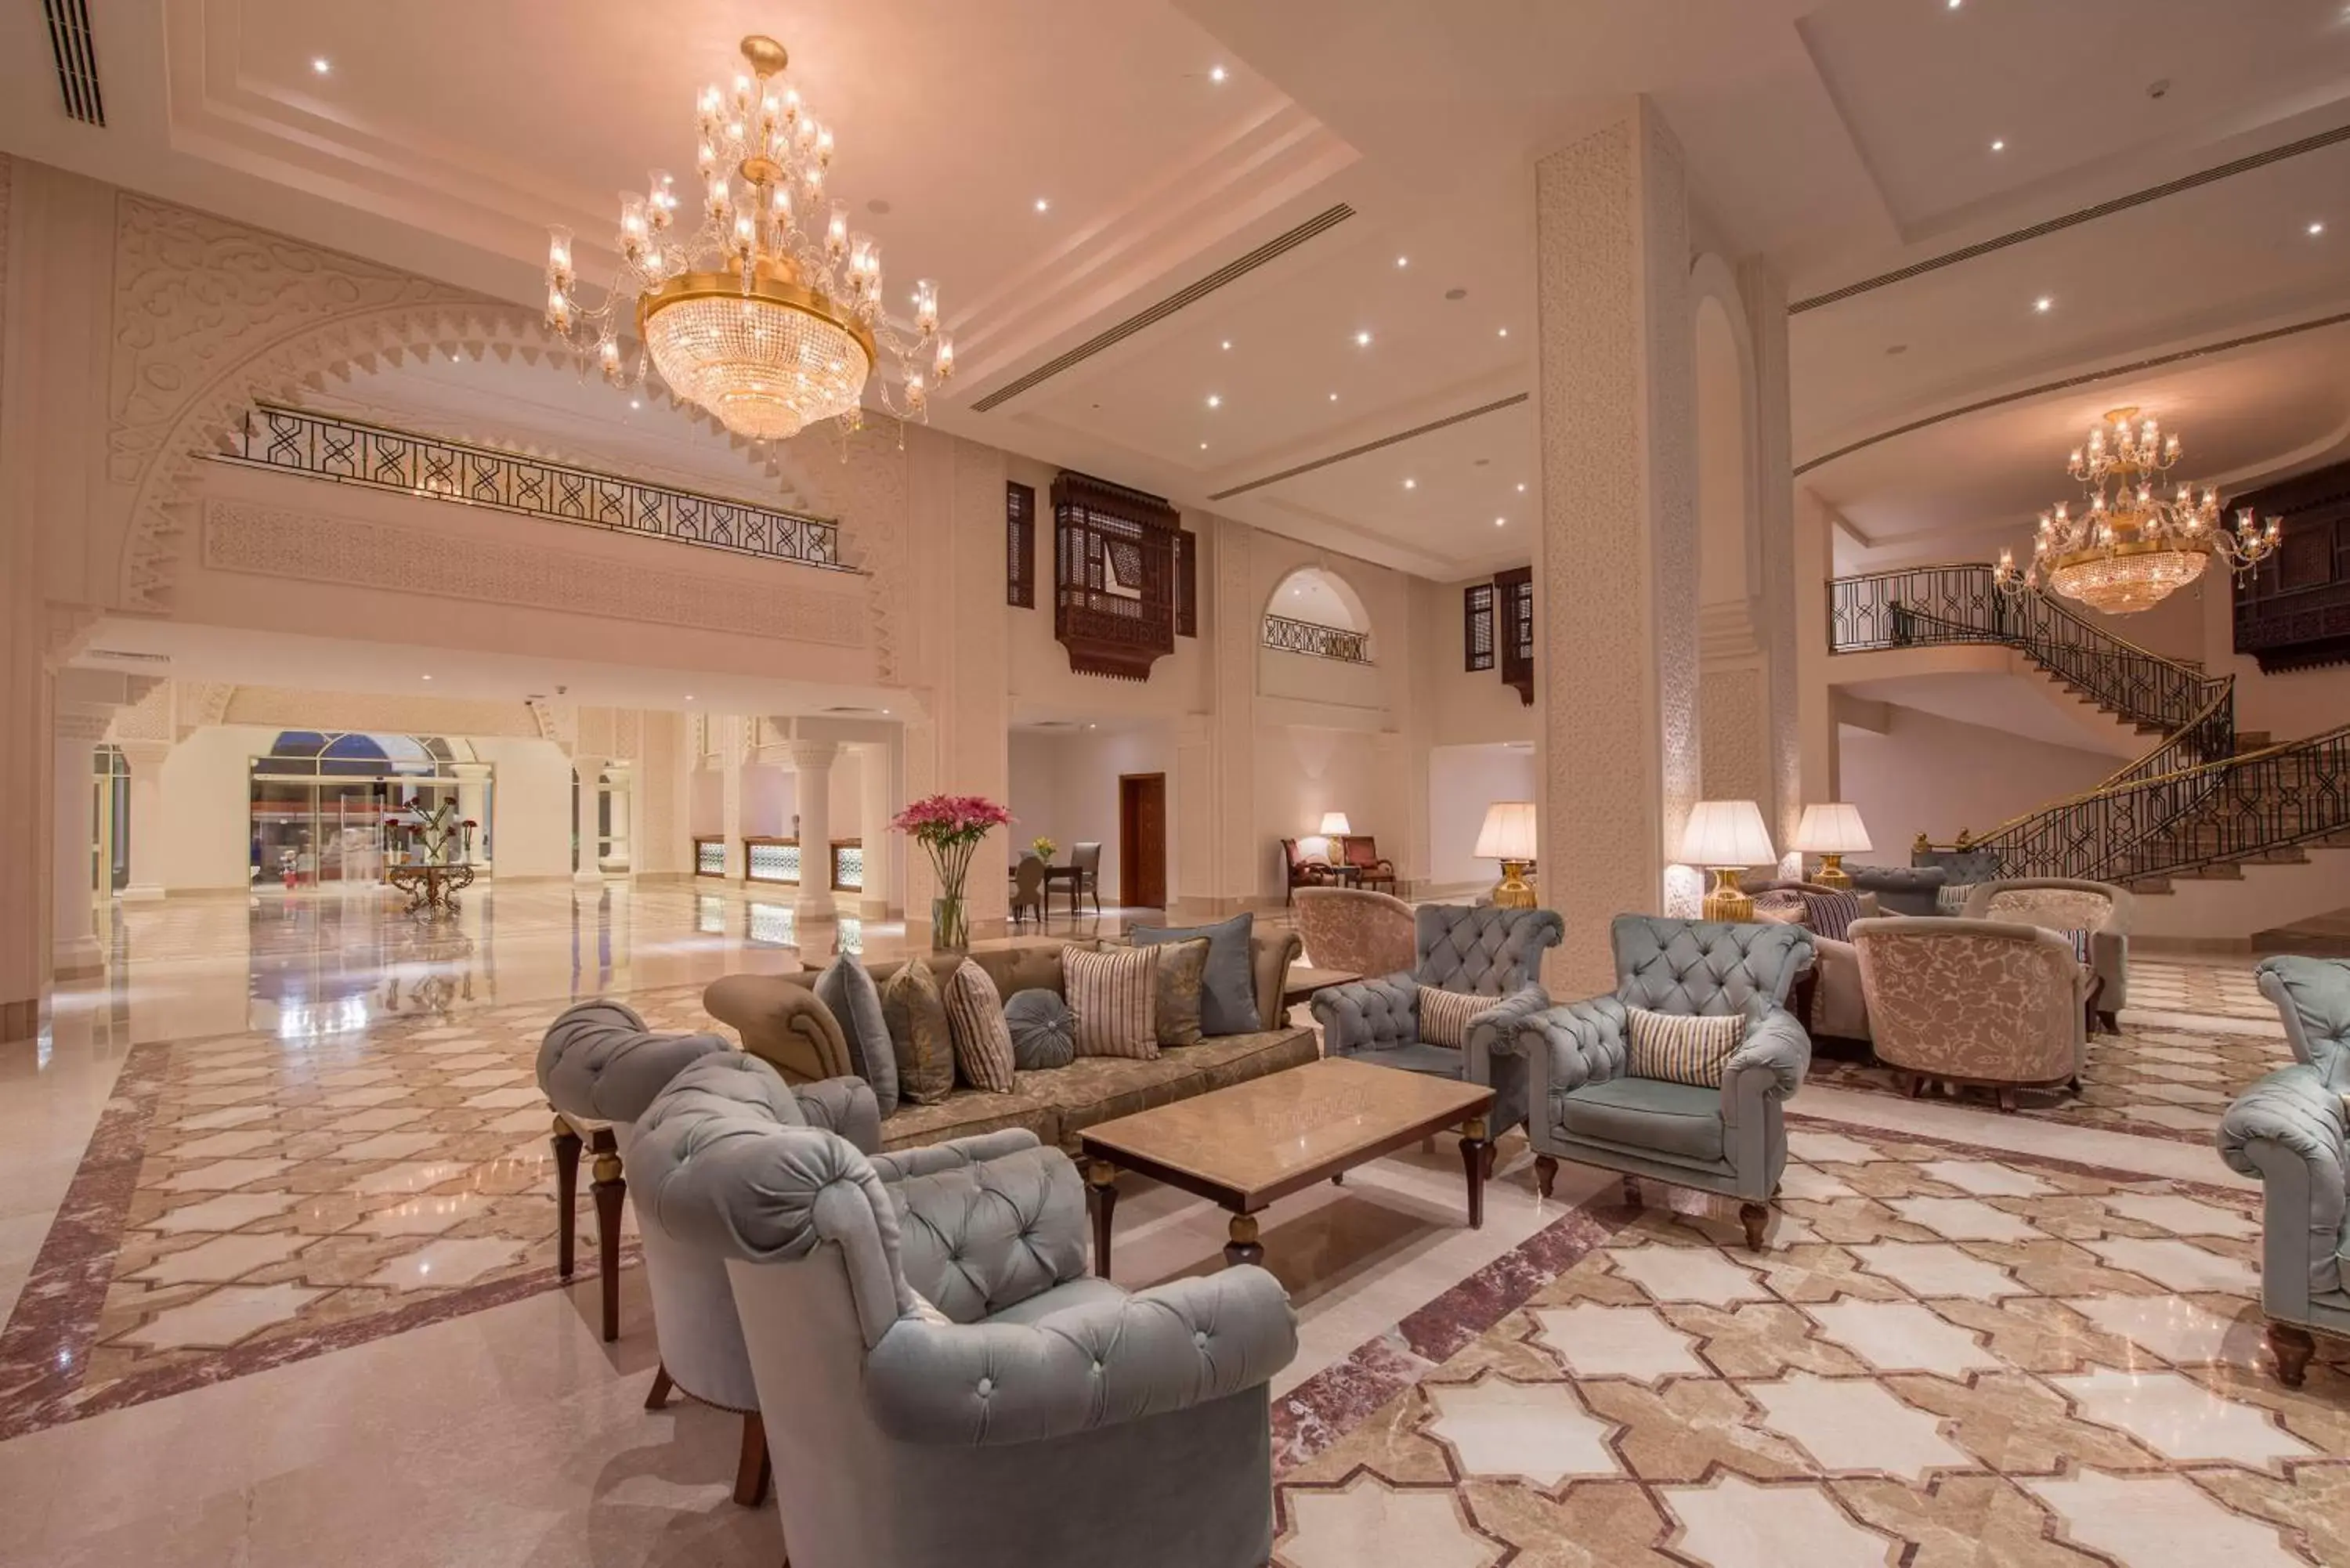 Lobby or reception, Lobby/Reception in Baron Palace Sahl Hasheesh